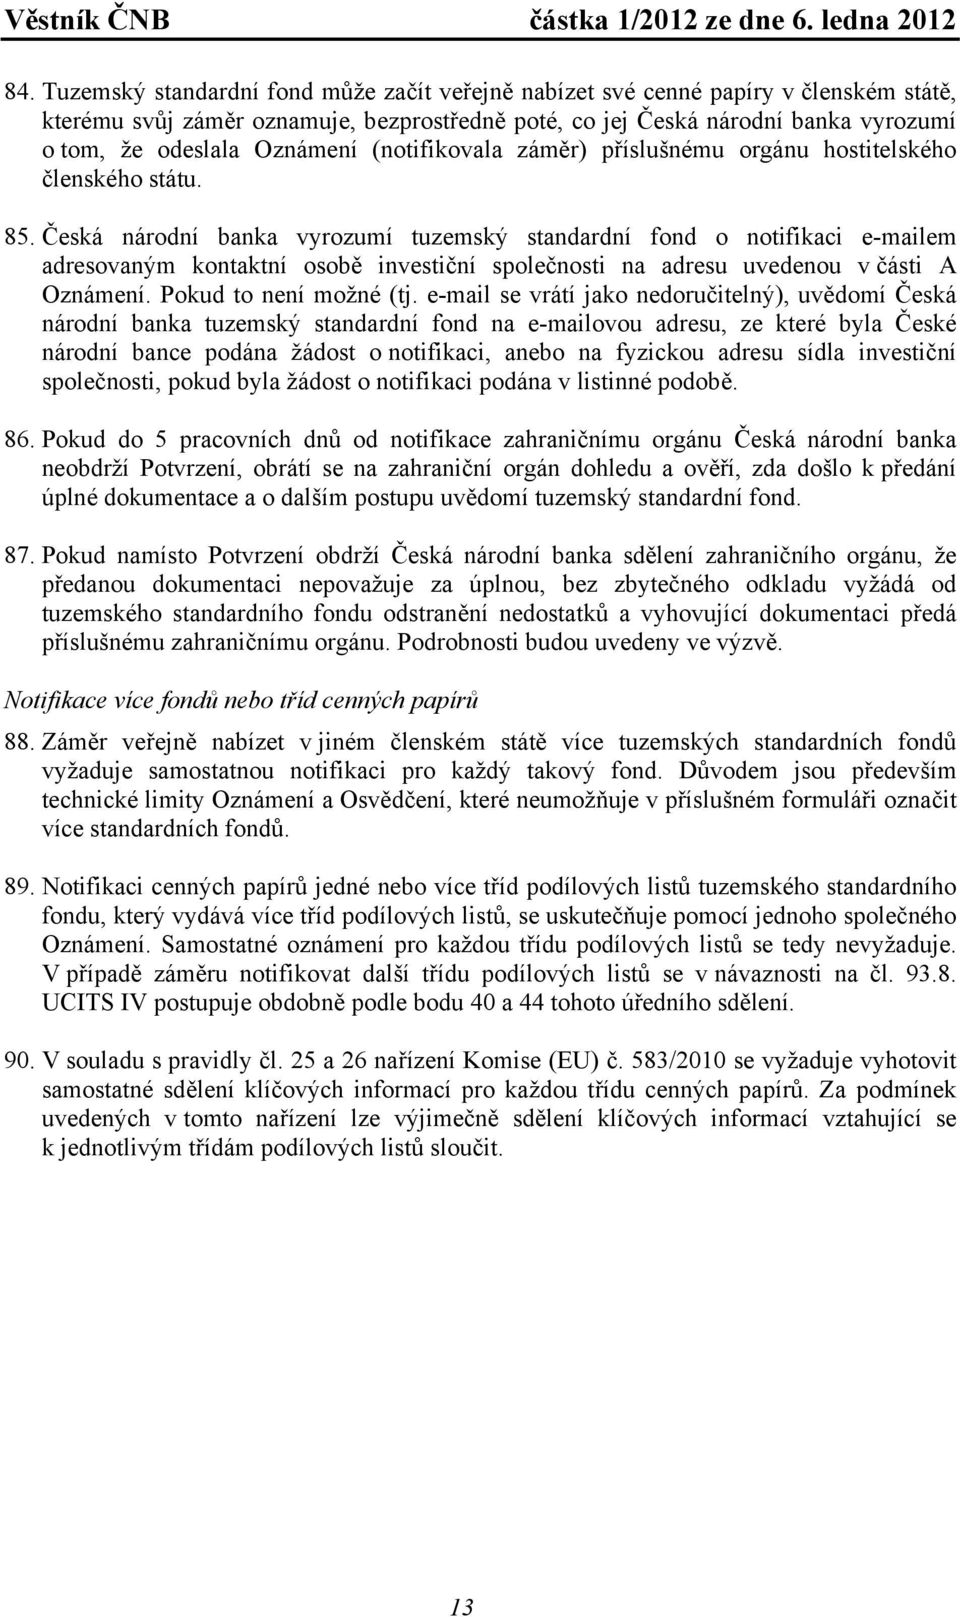 Česká národní banka vyrozumí tuzemský standardní fond o notifikaci e-mailem adresovaným kontaktní osobě investiční společnosti na adresu uvedenou v části A Oznámení. Pokud to není možné (tj.